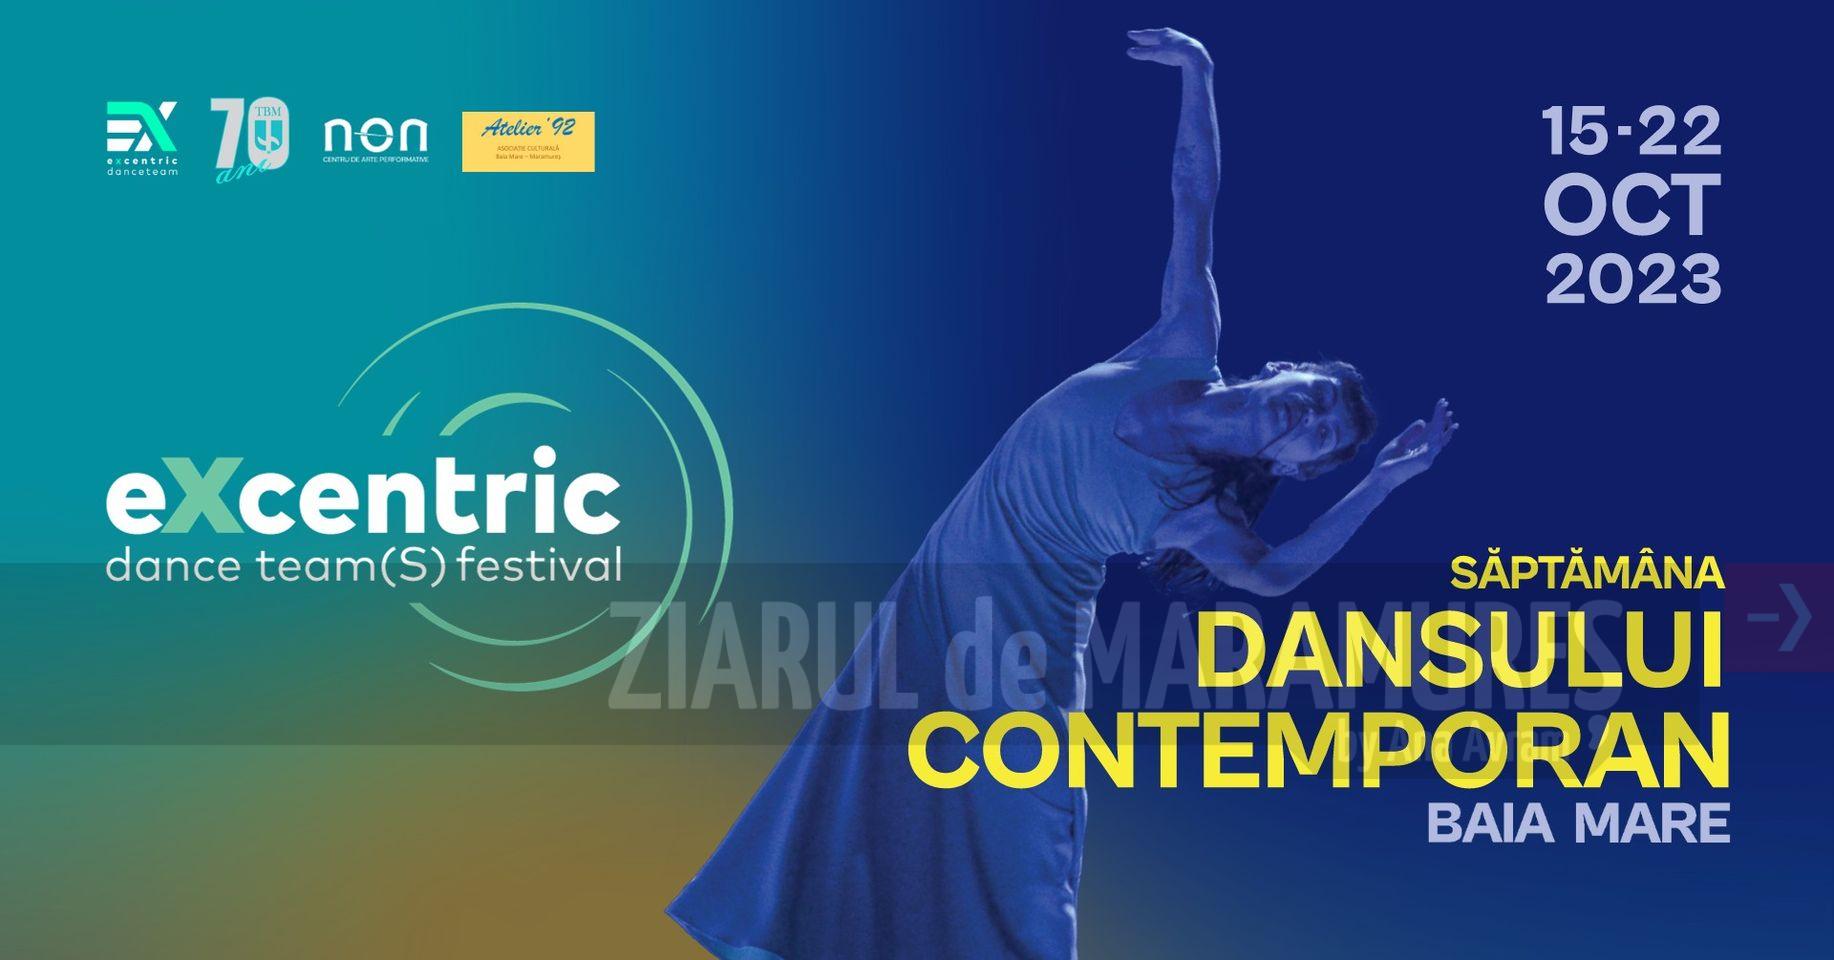 Baia Mare: Festivalul eXcentric dance team(S) se desfășoară în luna octombrie